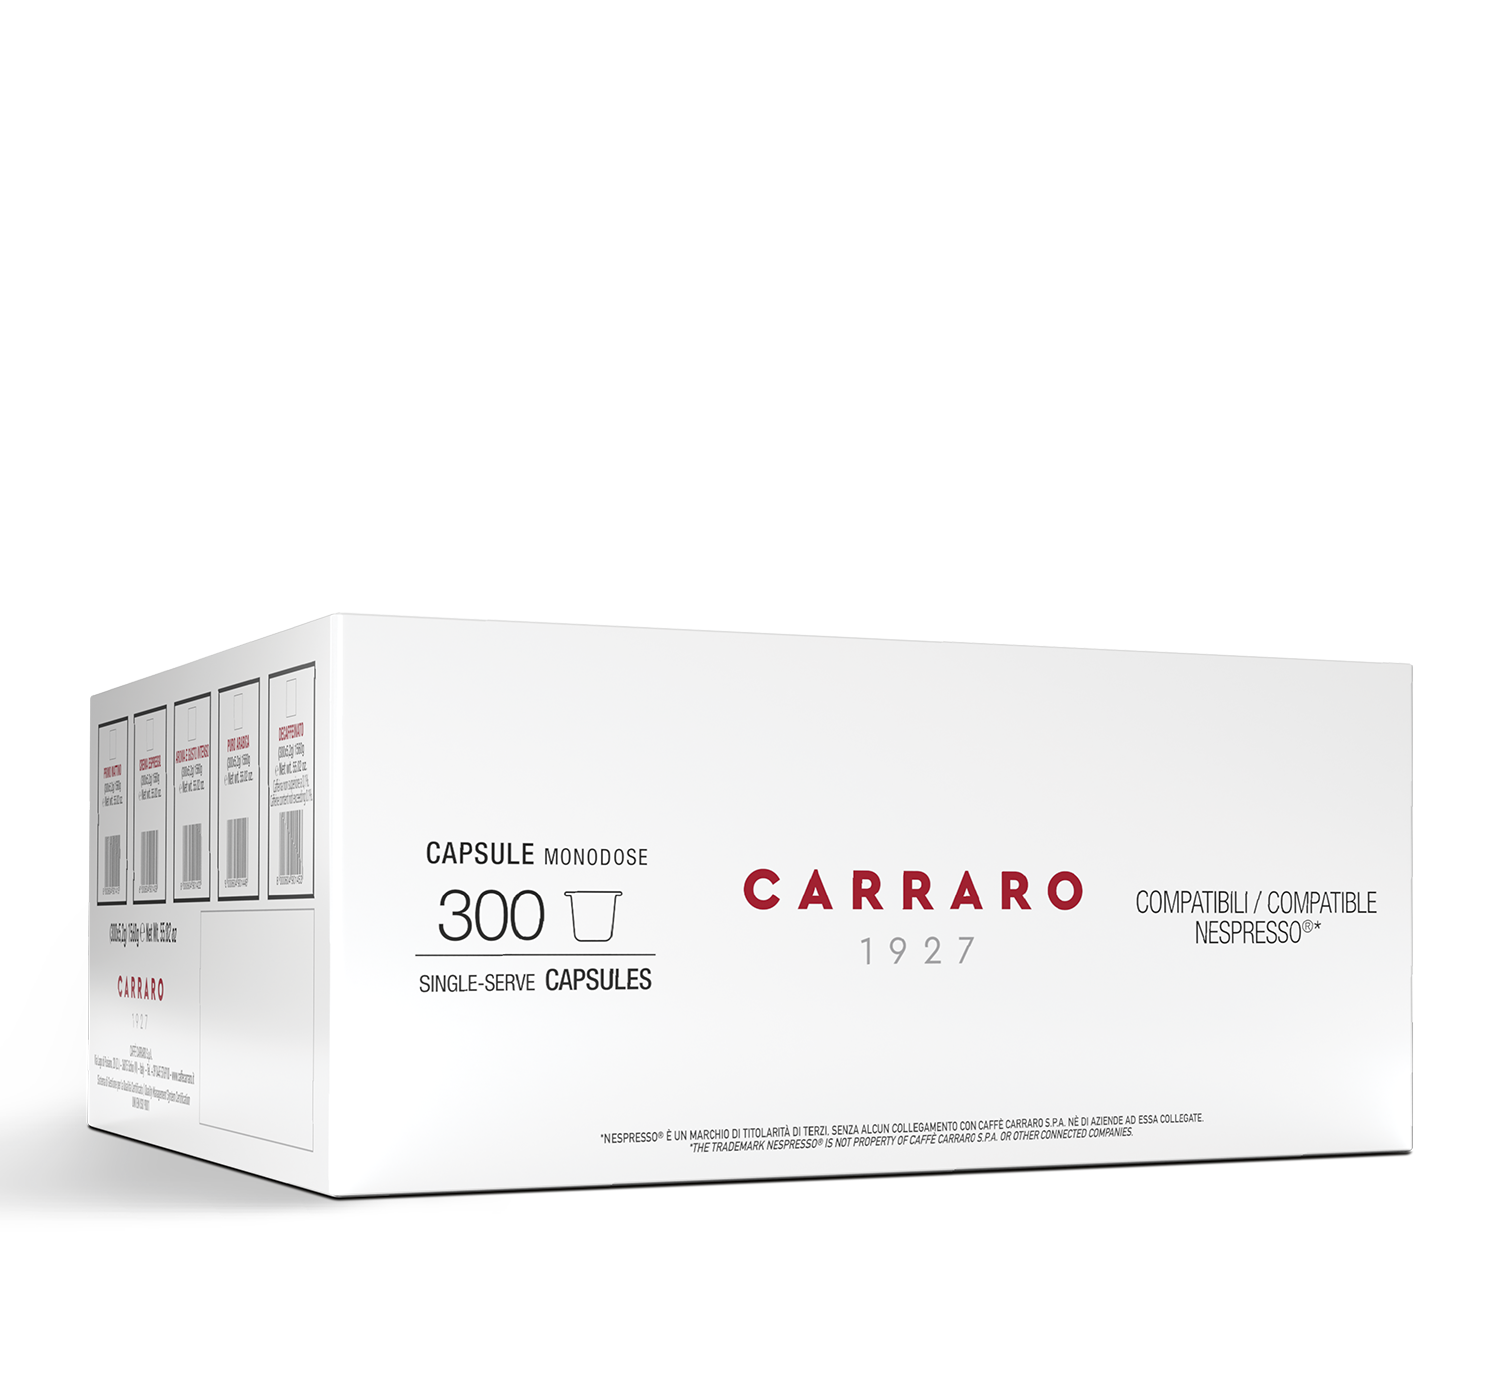 Capsules - 300 capsules: Primo Mattino / Crema Espresso / Puro Arabica / Decaffeinato - Shop online Caffè Carraro